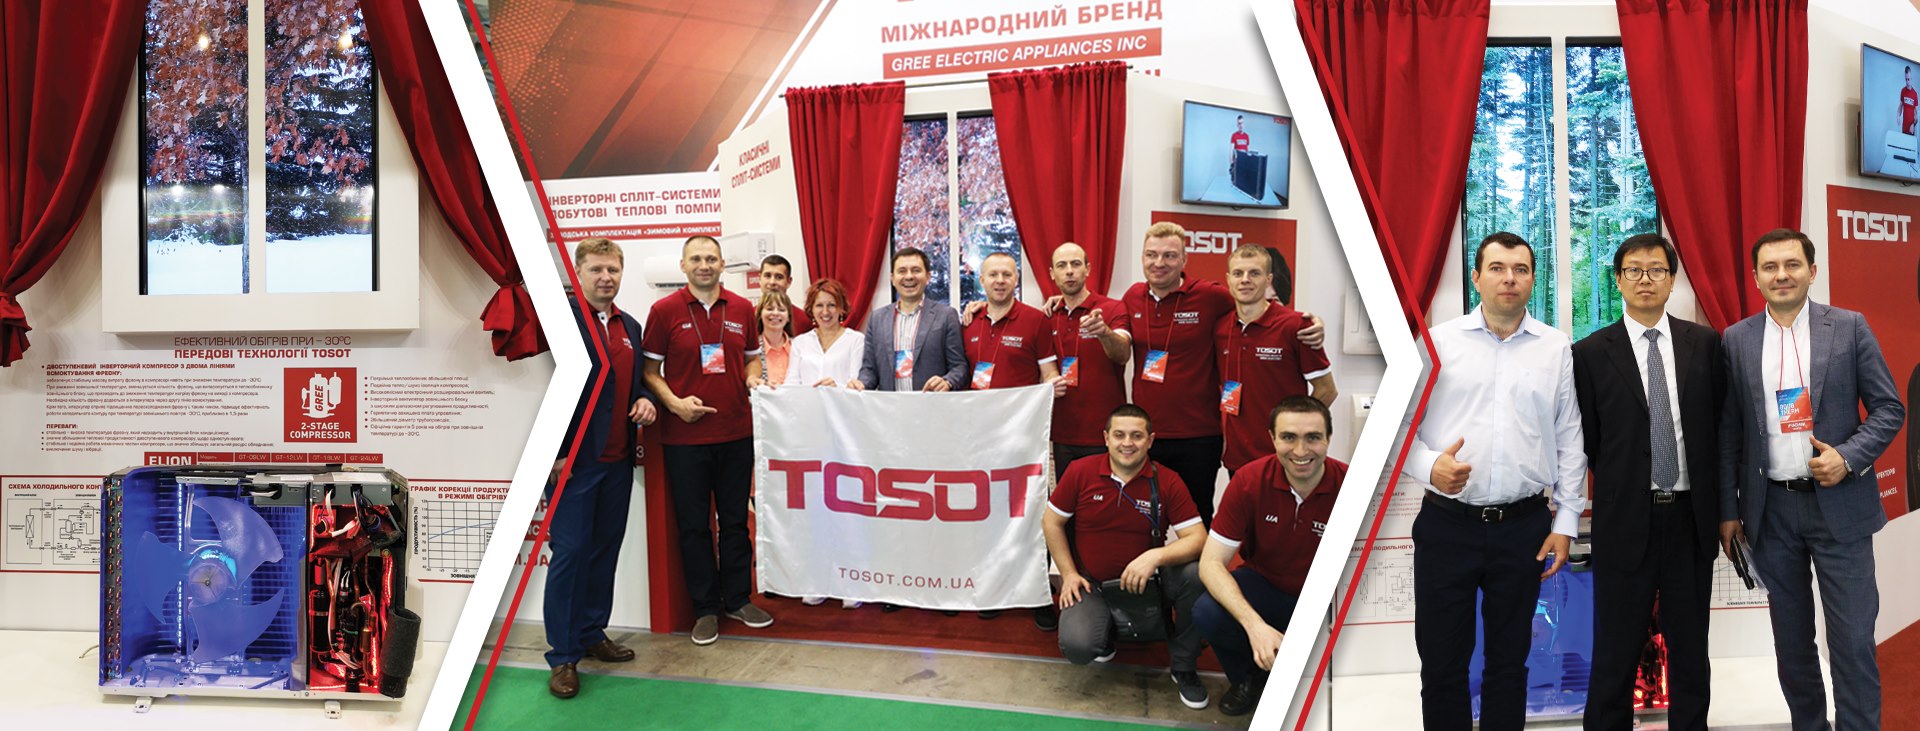 команда TOSOT Украина частник выставки Акватерм 2019 ( TOSOT Одесса )